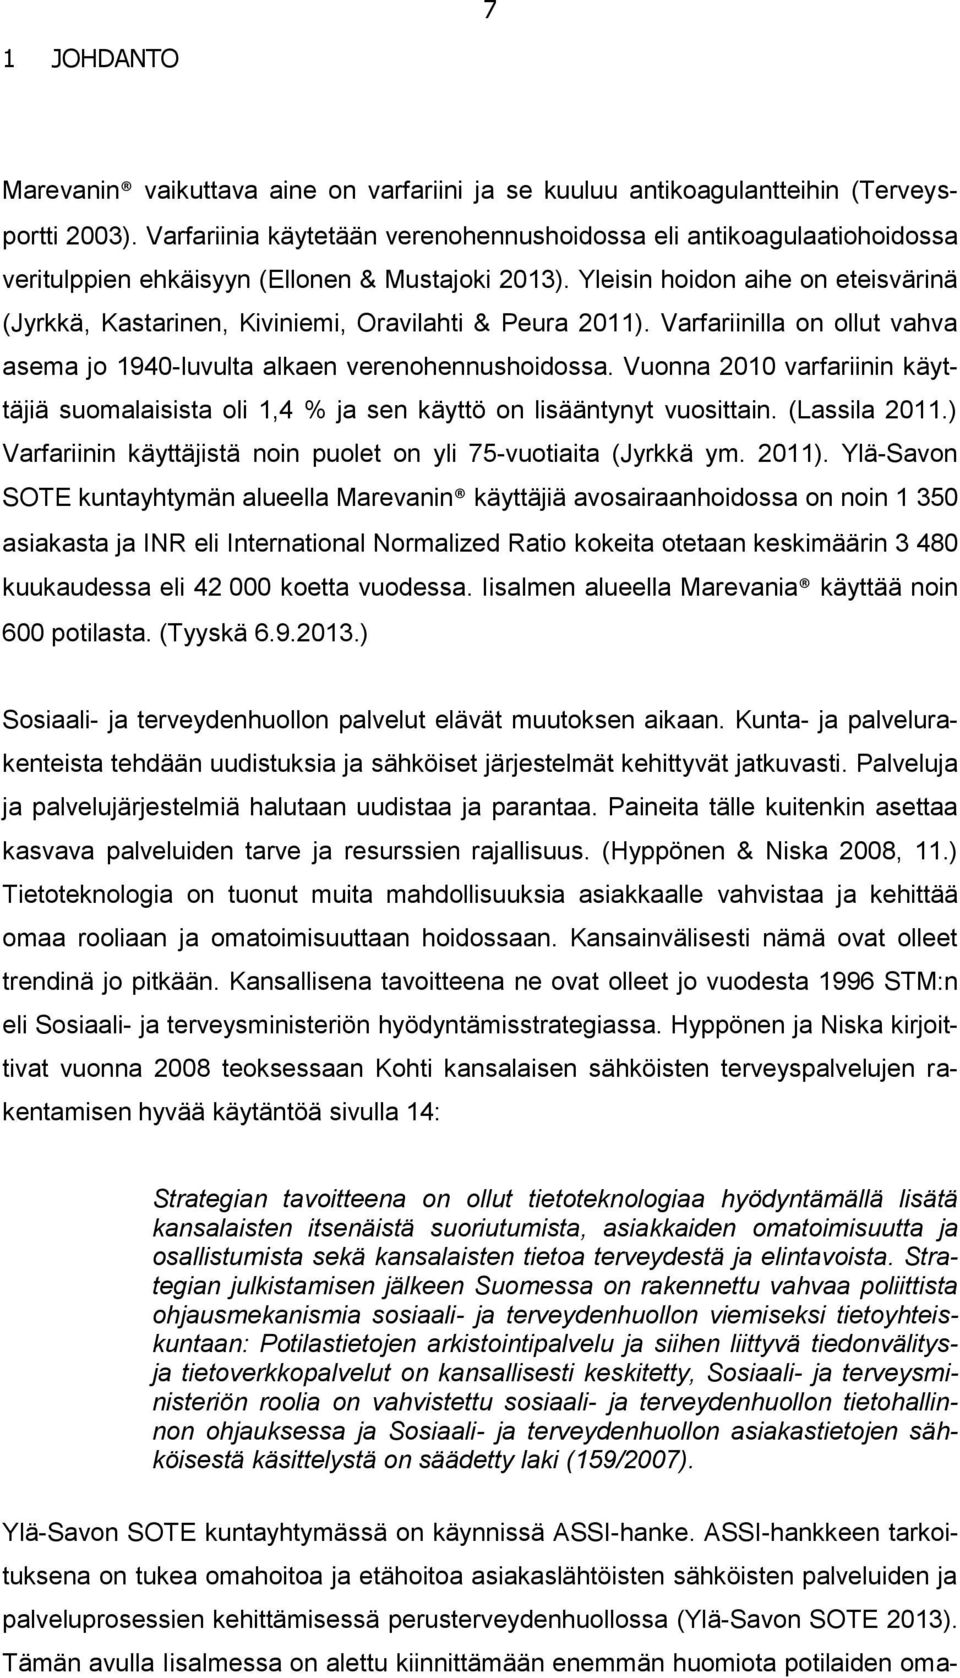 Yleisin hoidon aihe on eteisvärinä (Jyrkkä, Kastarinen, Kiviniemi, Oravilahti & Peura 2011). Varfariinilla on ollut vahva asema jo 1940-luvulta alkaen verenohennushoidossa.